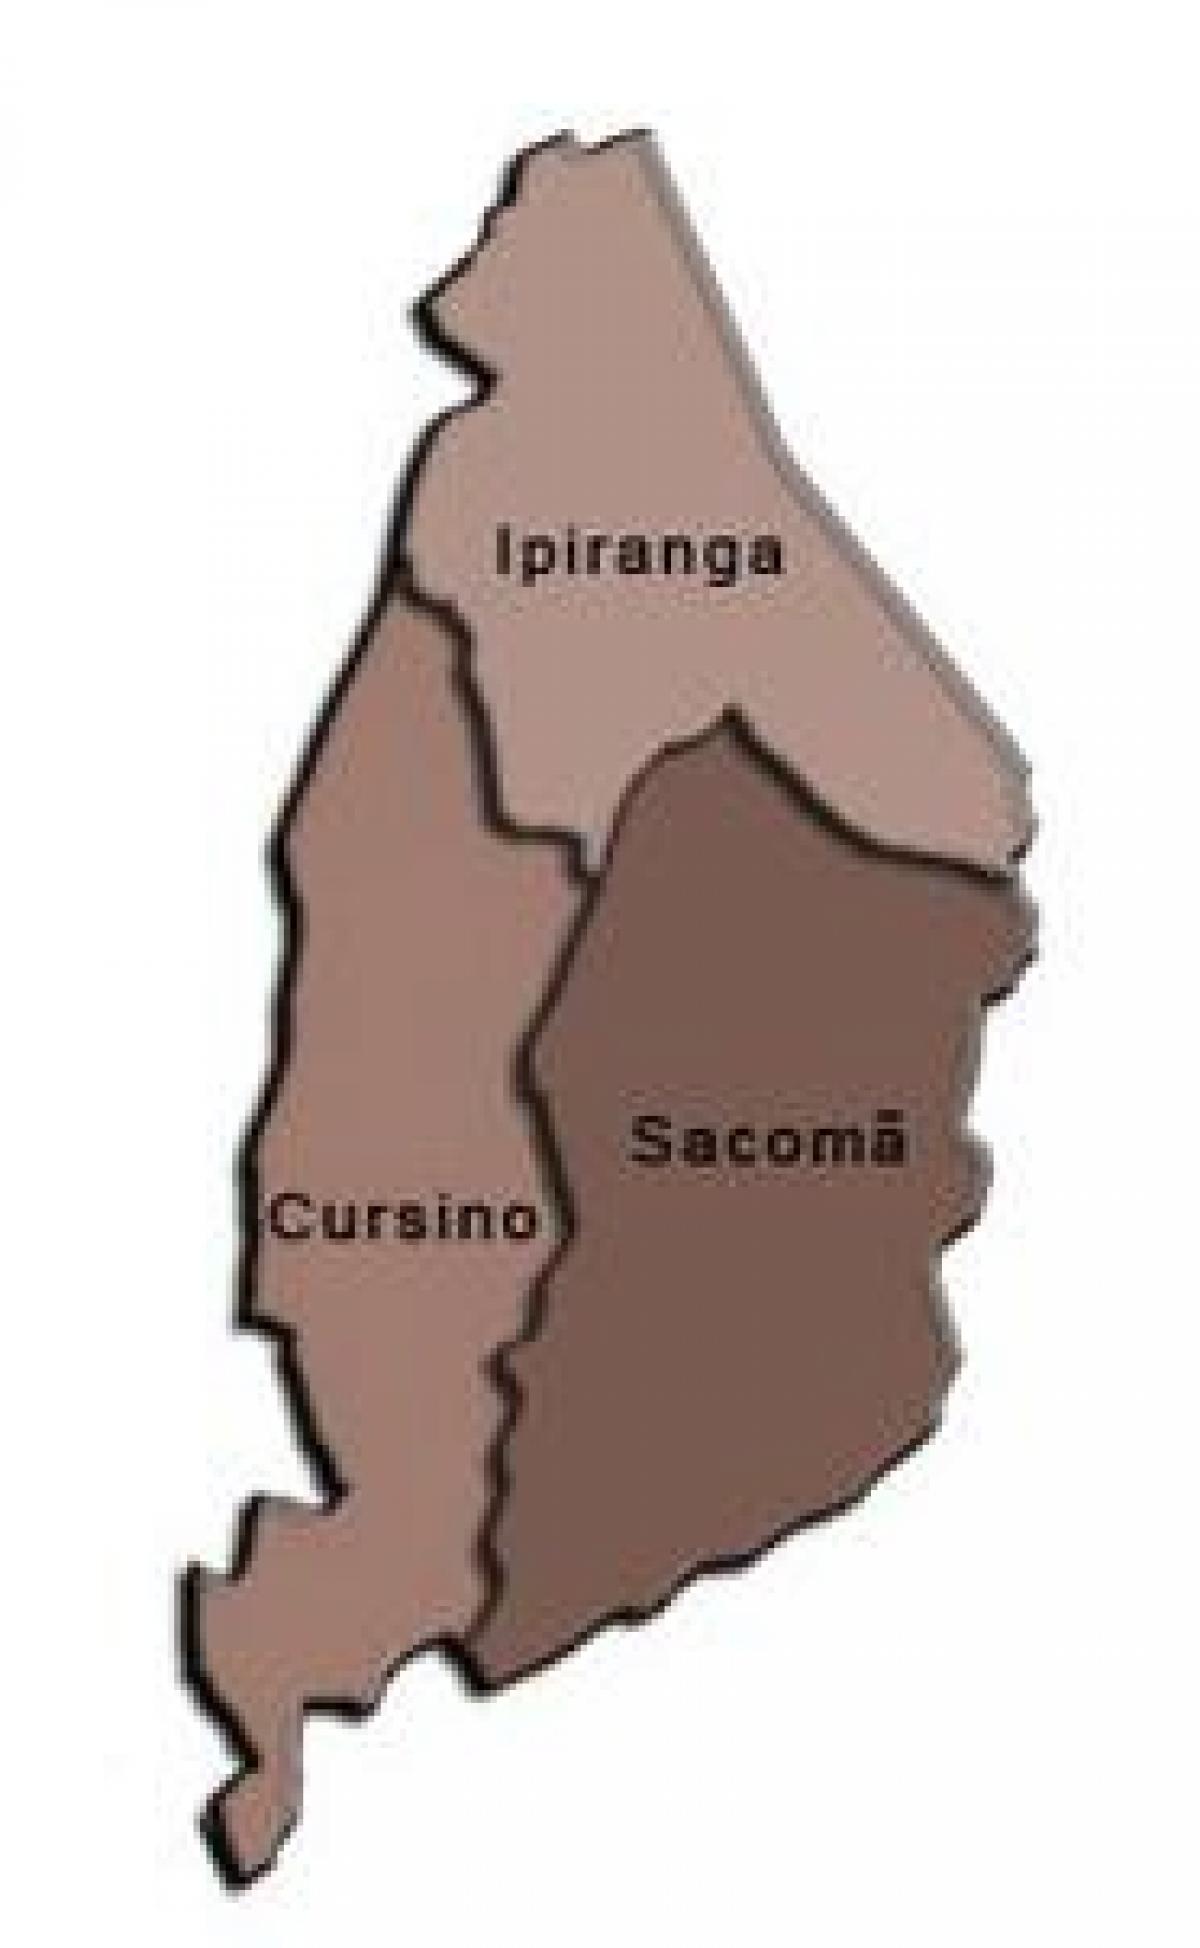 מפה של Ipiranga תת-פריפקטורה